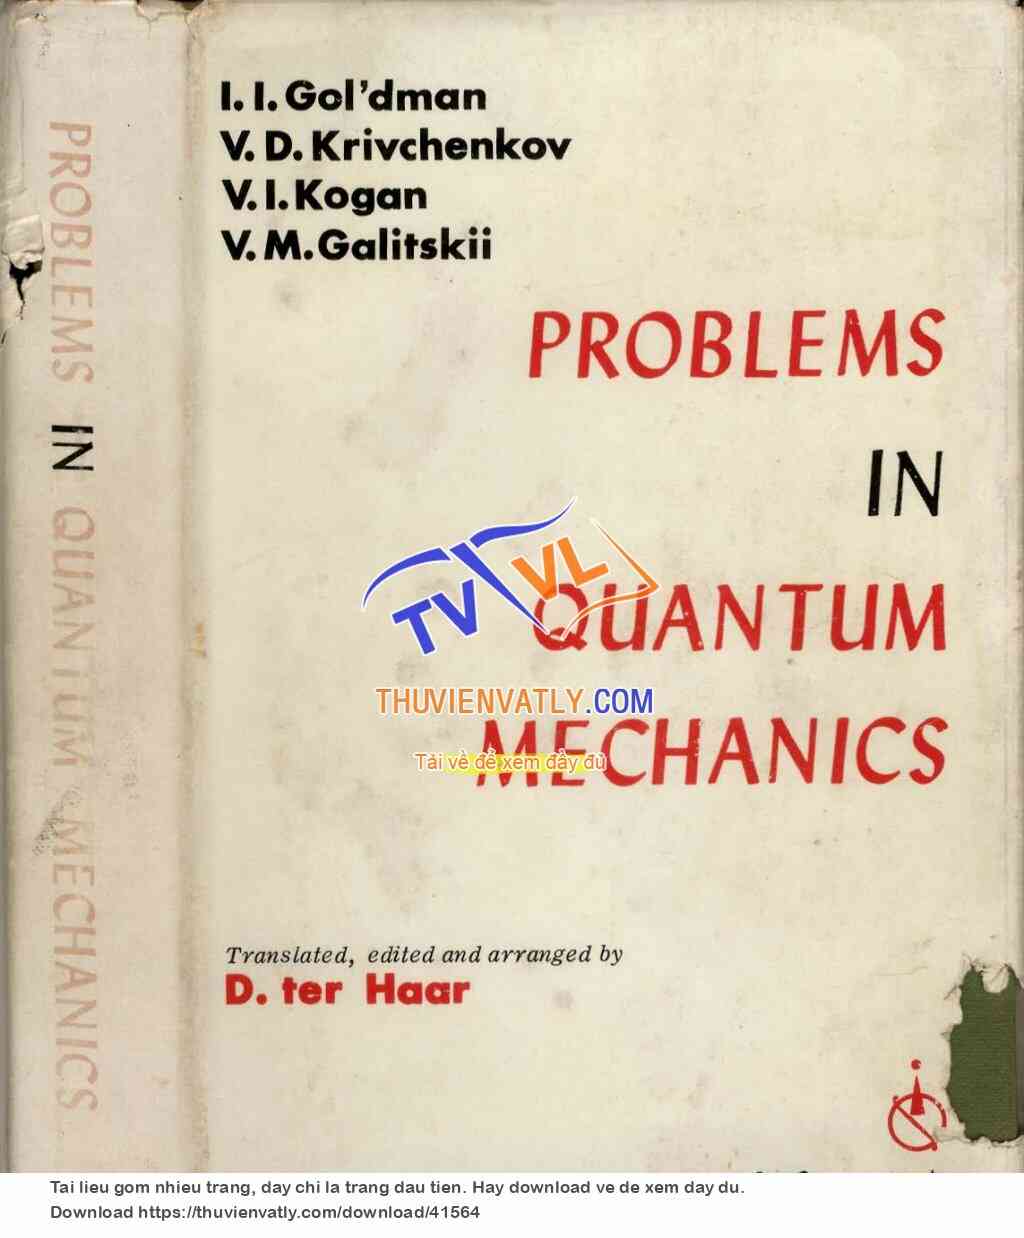 Problems in Quantum Mechanics